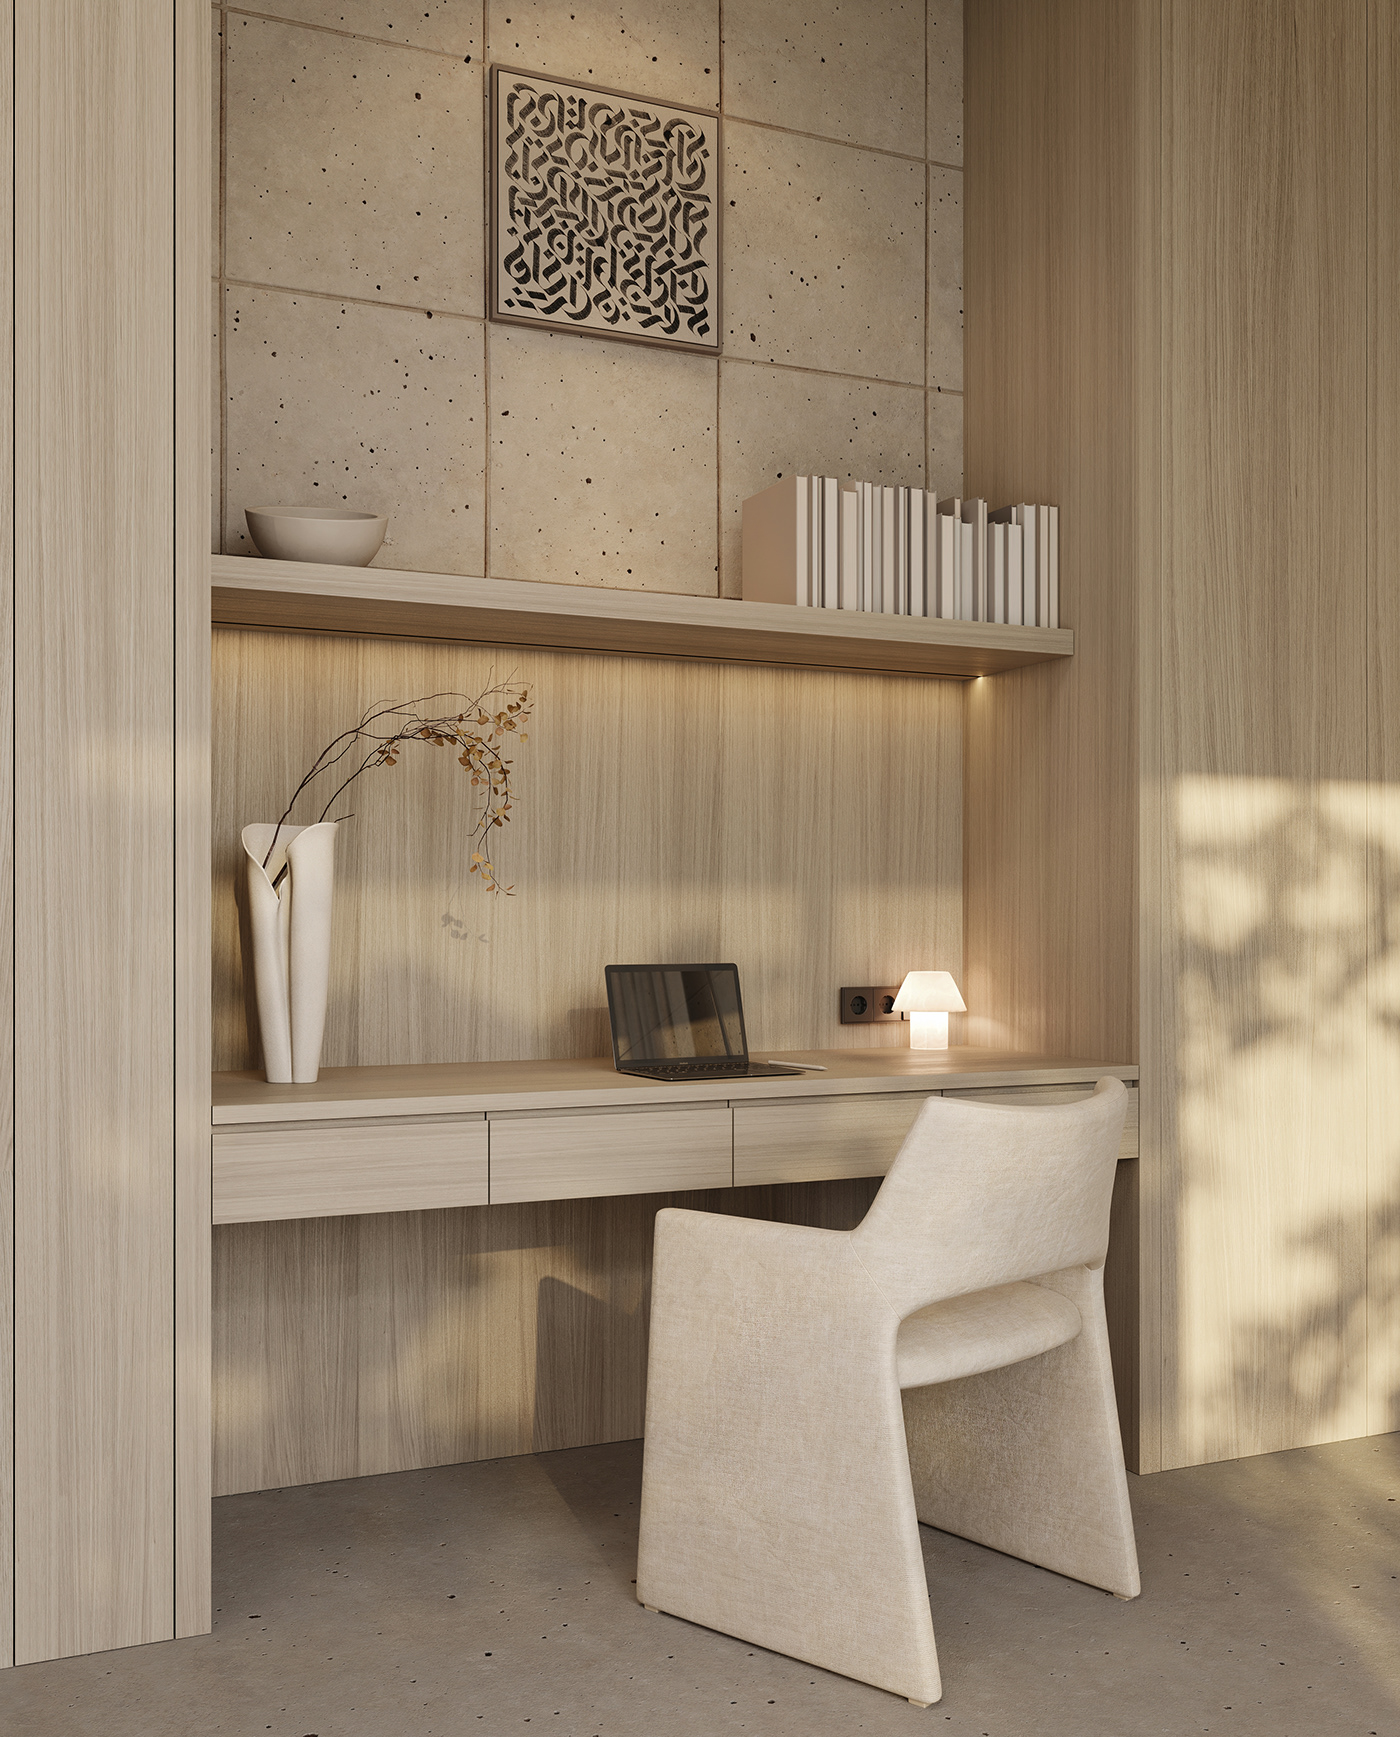 Interior design cozy interior visualization modern 3ds max archviz